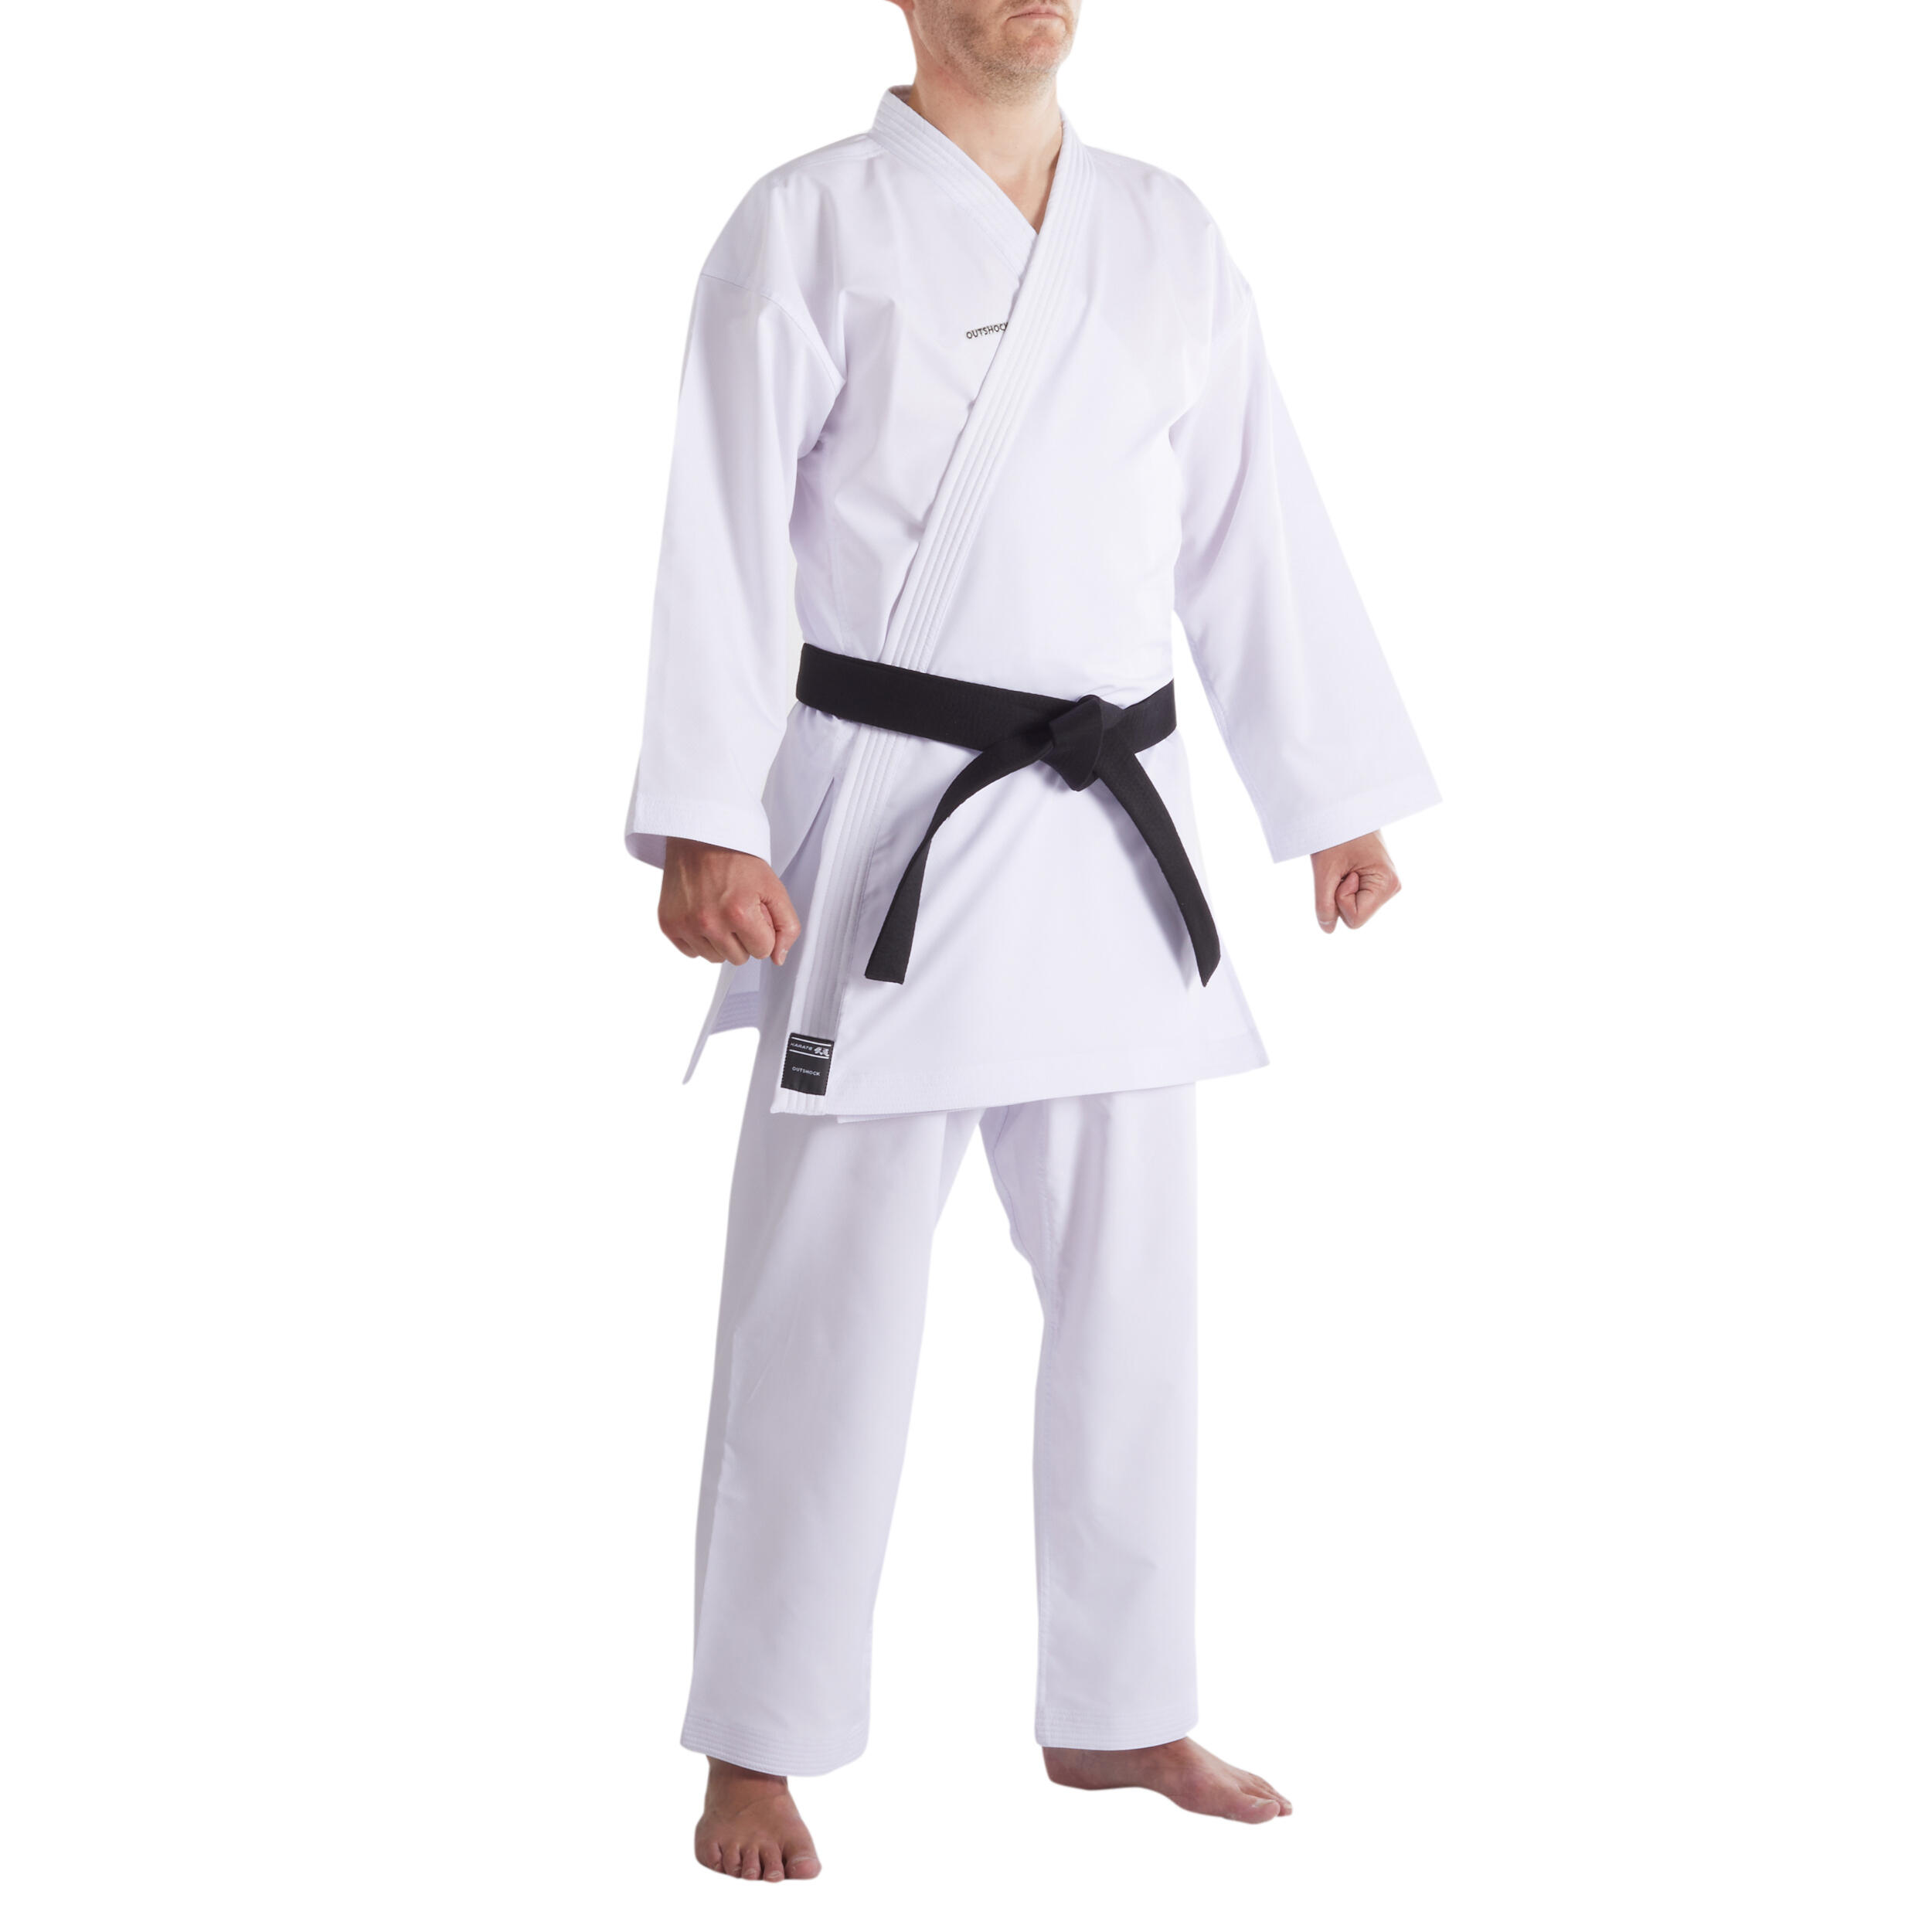 900 Adult Kumite Karate Uniform 2/13